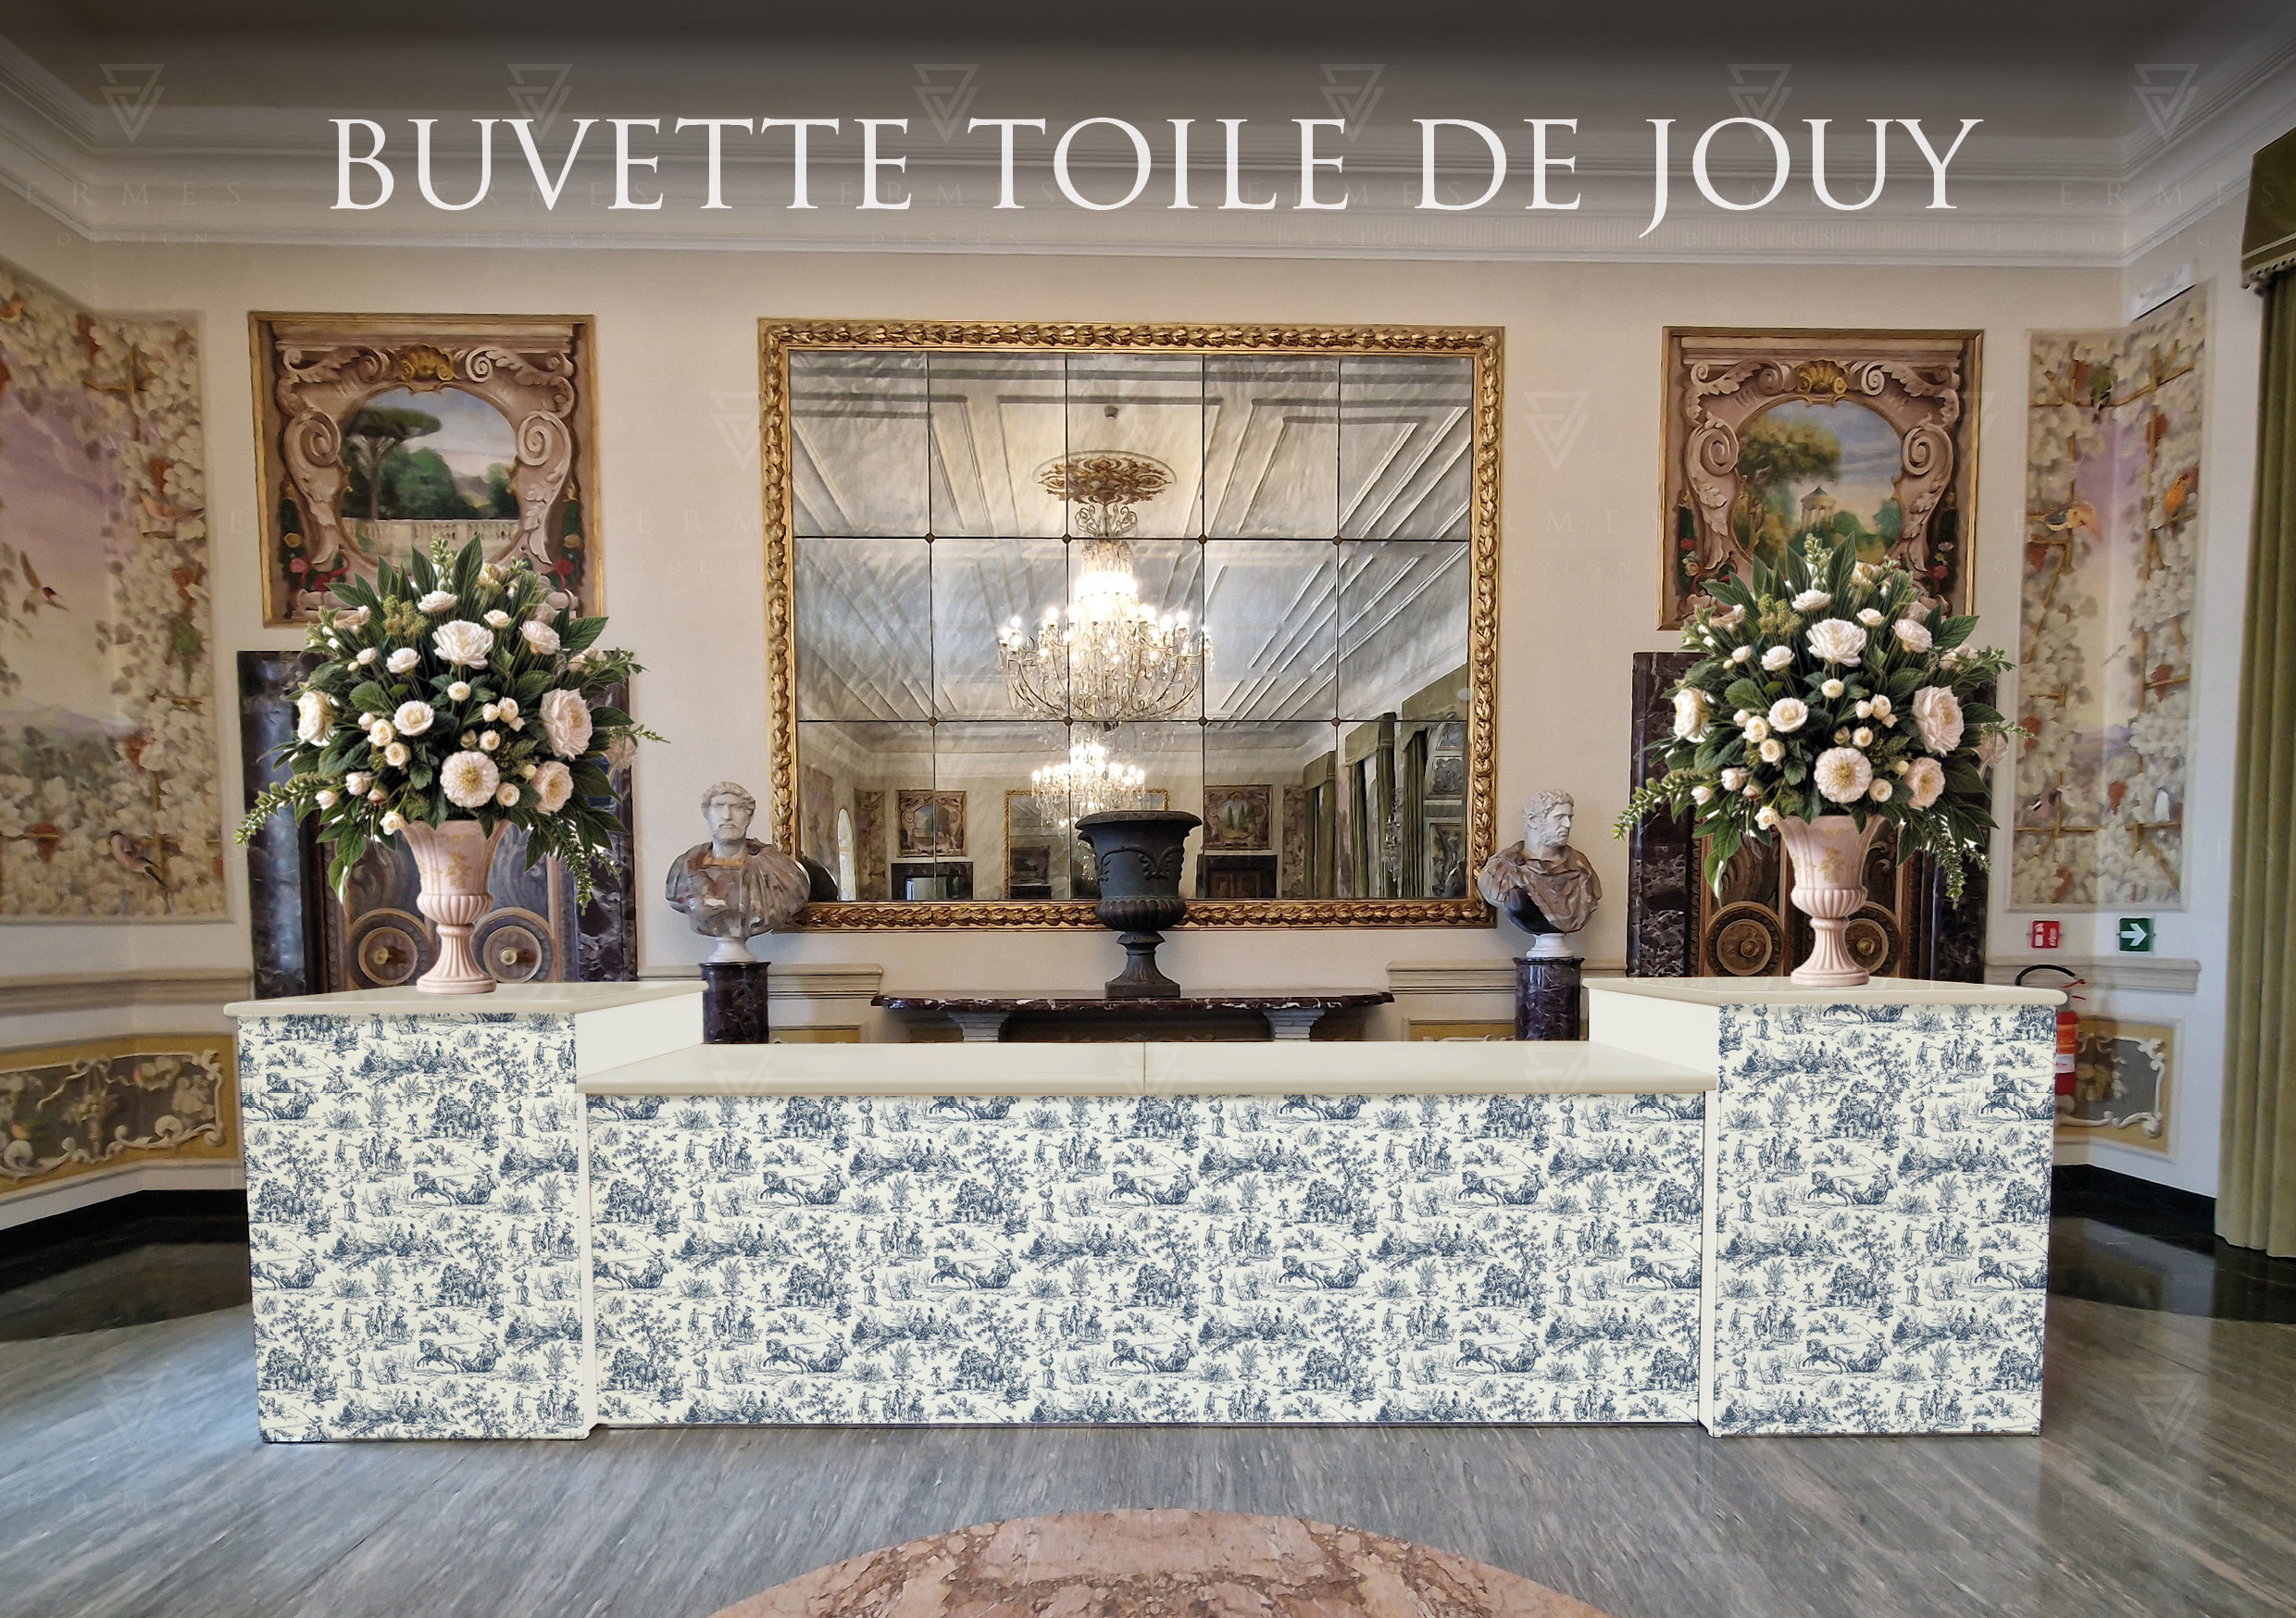 BUFFET TOILE DE JOUY